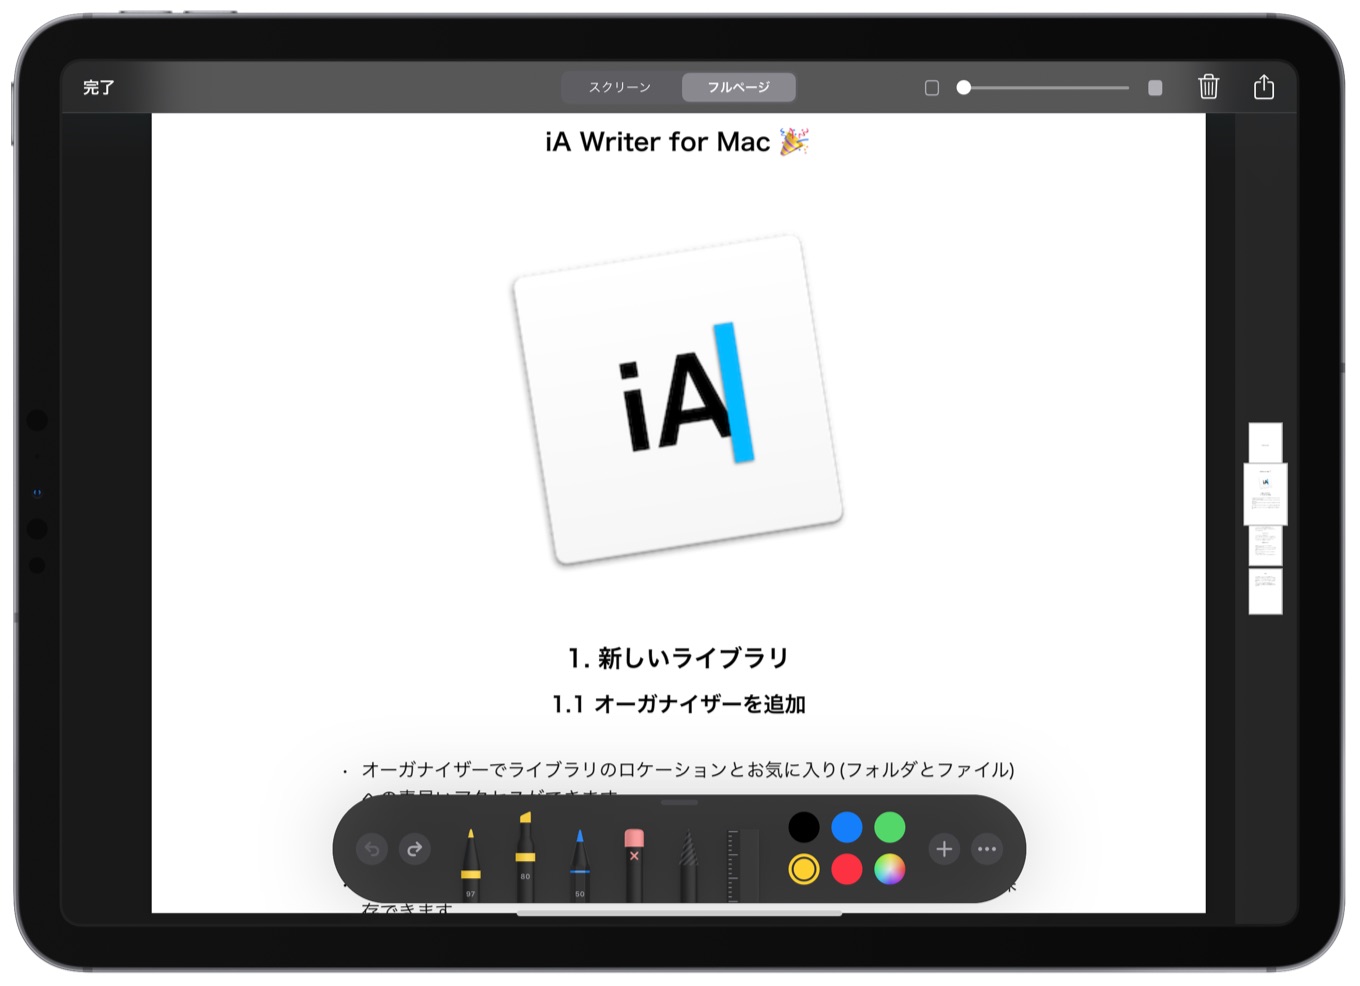 iA Writer v5.3 for iOS/iPadOS